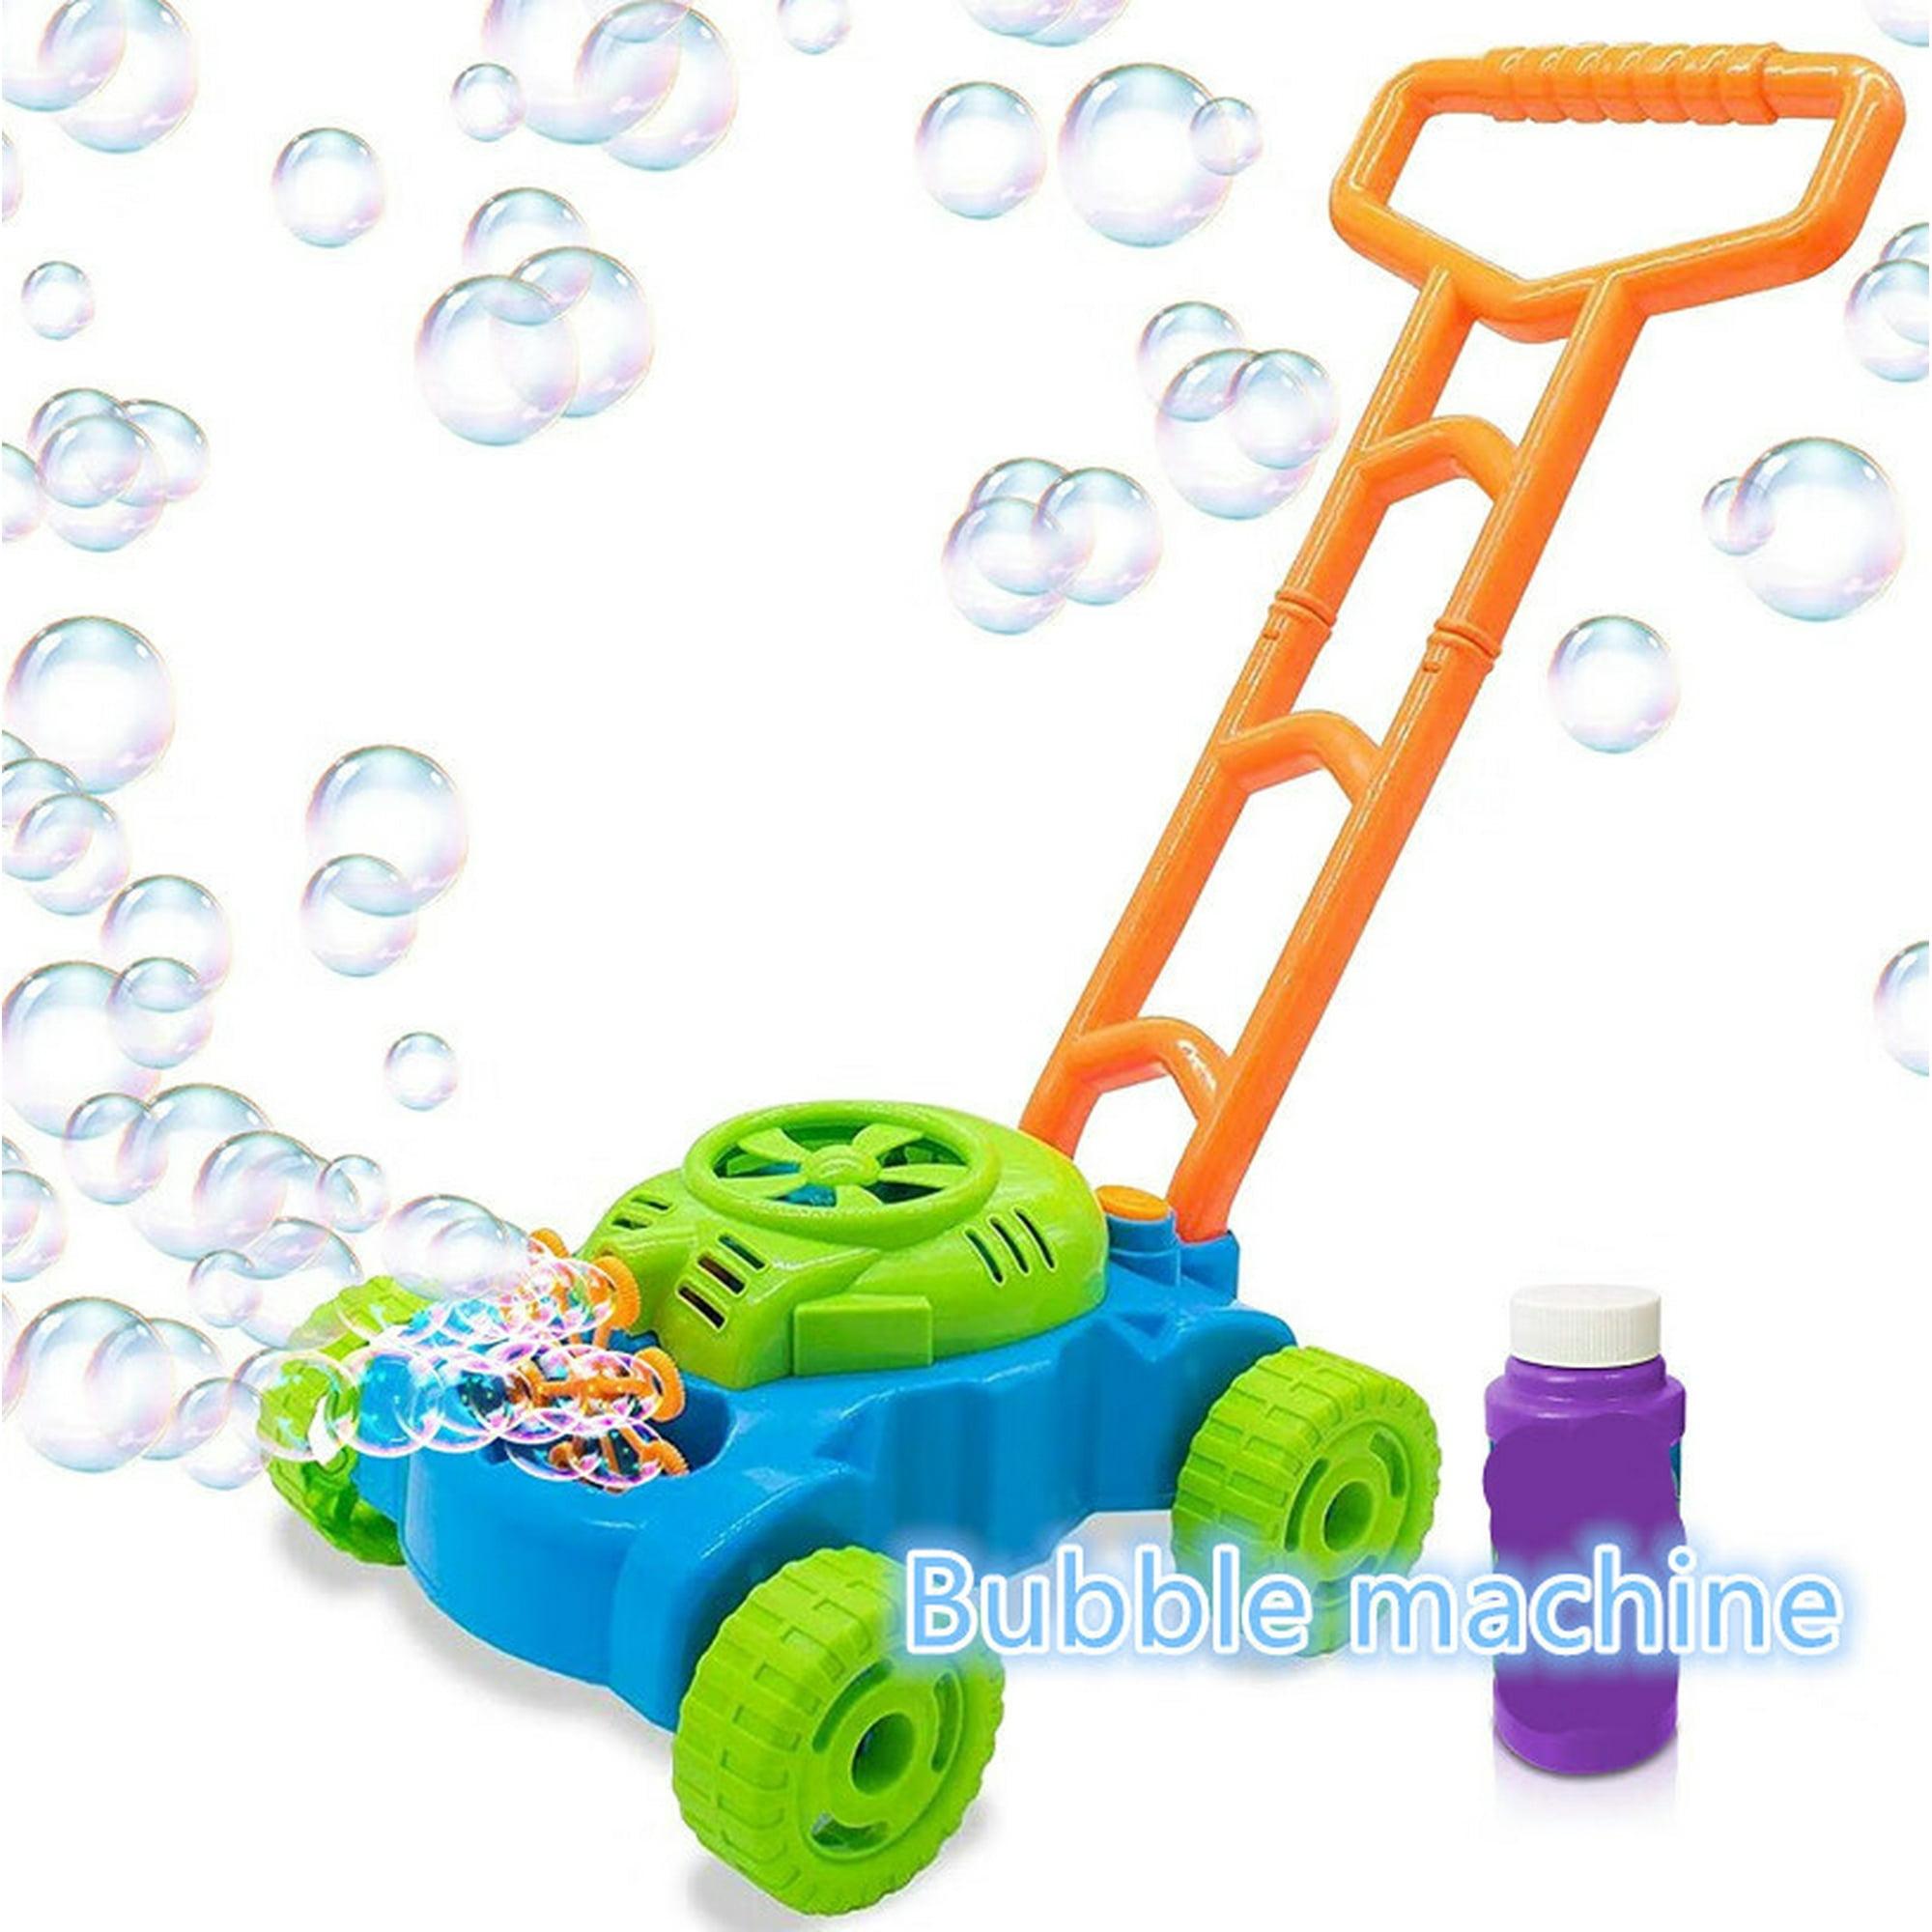 Máquina de burbujas, fabricante automático de burbujas, soplador de  burbujas, juguetes para fiestas en interiores y exteriores, regalo único  para